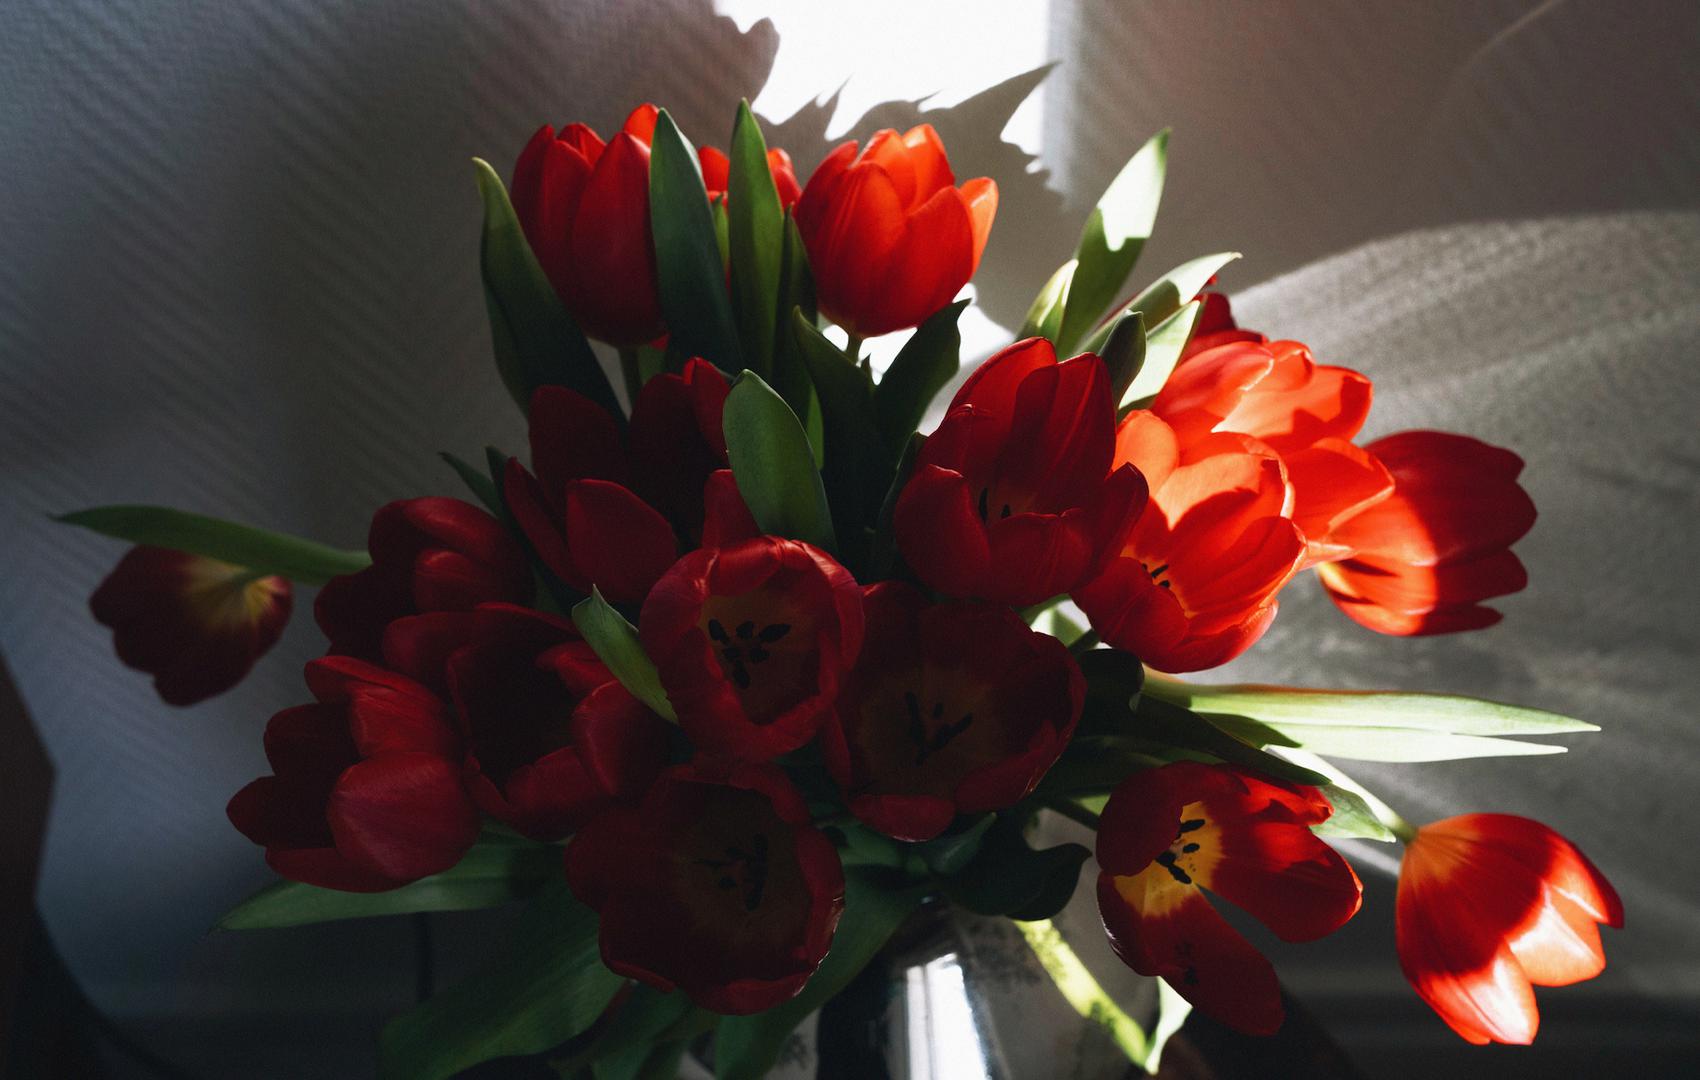 Prirodno cvijeće u vazi odličan je detalj na stolu